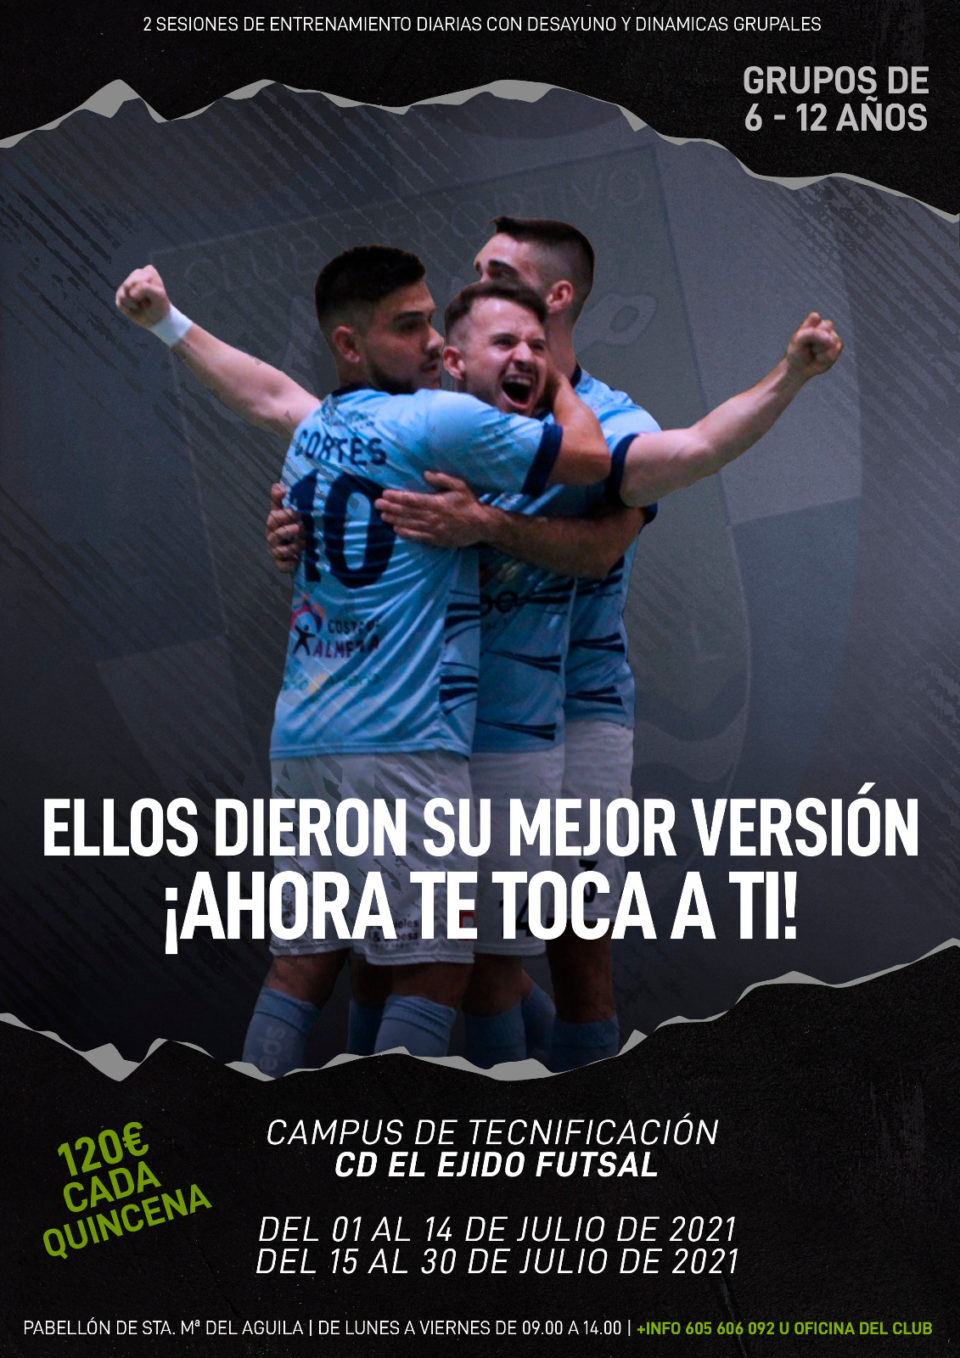 CD El Ejido Futsal Campus de Tecnificación